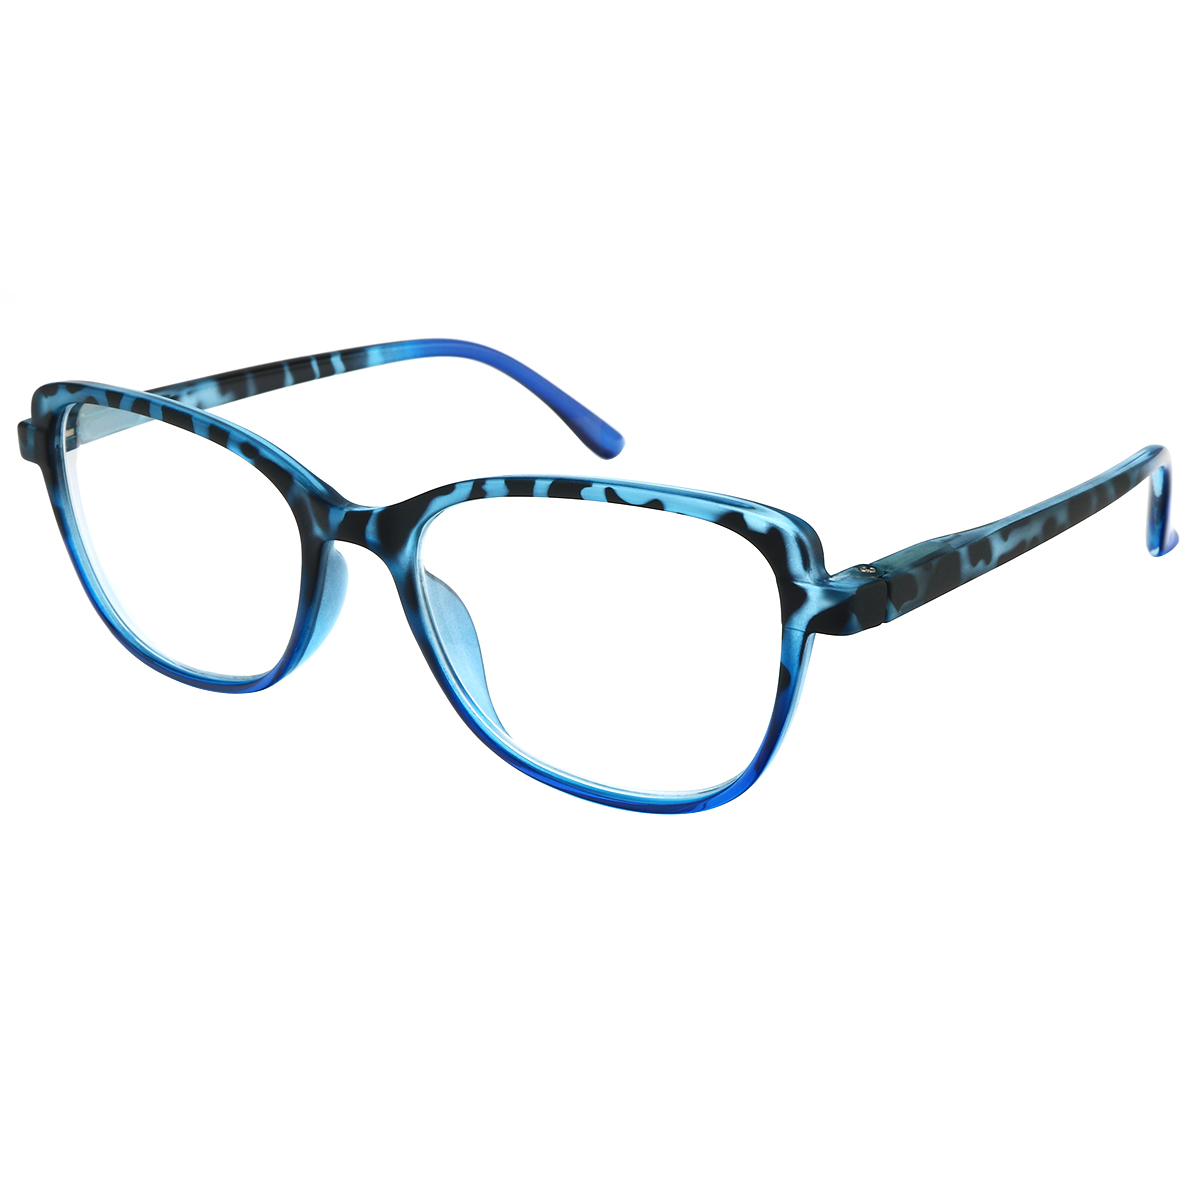 Felicia - Cat-eye Blue Reading Glasses for Women